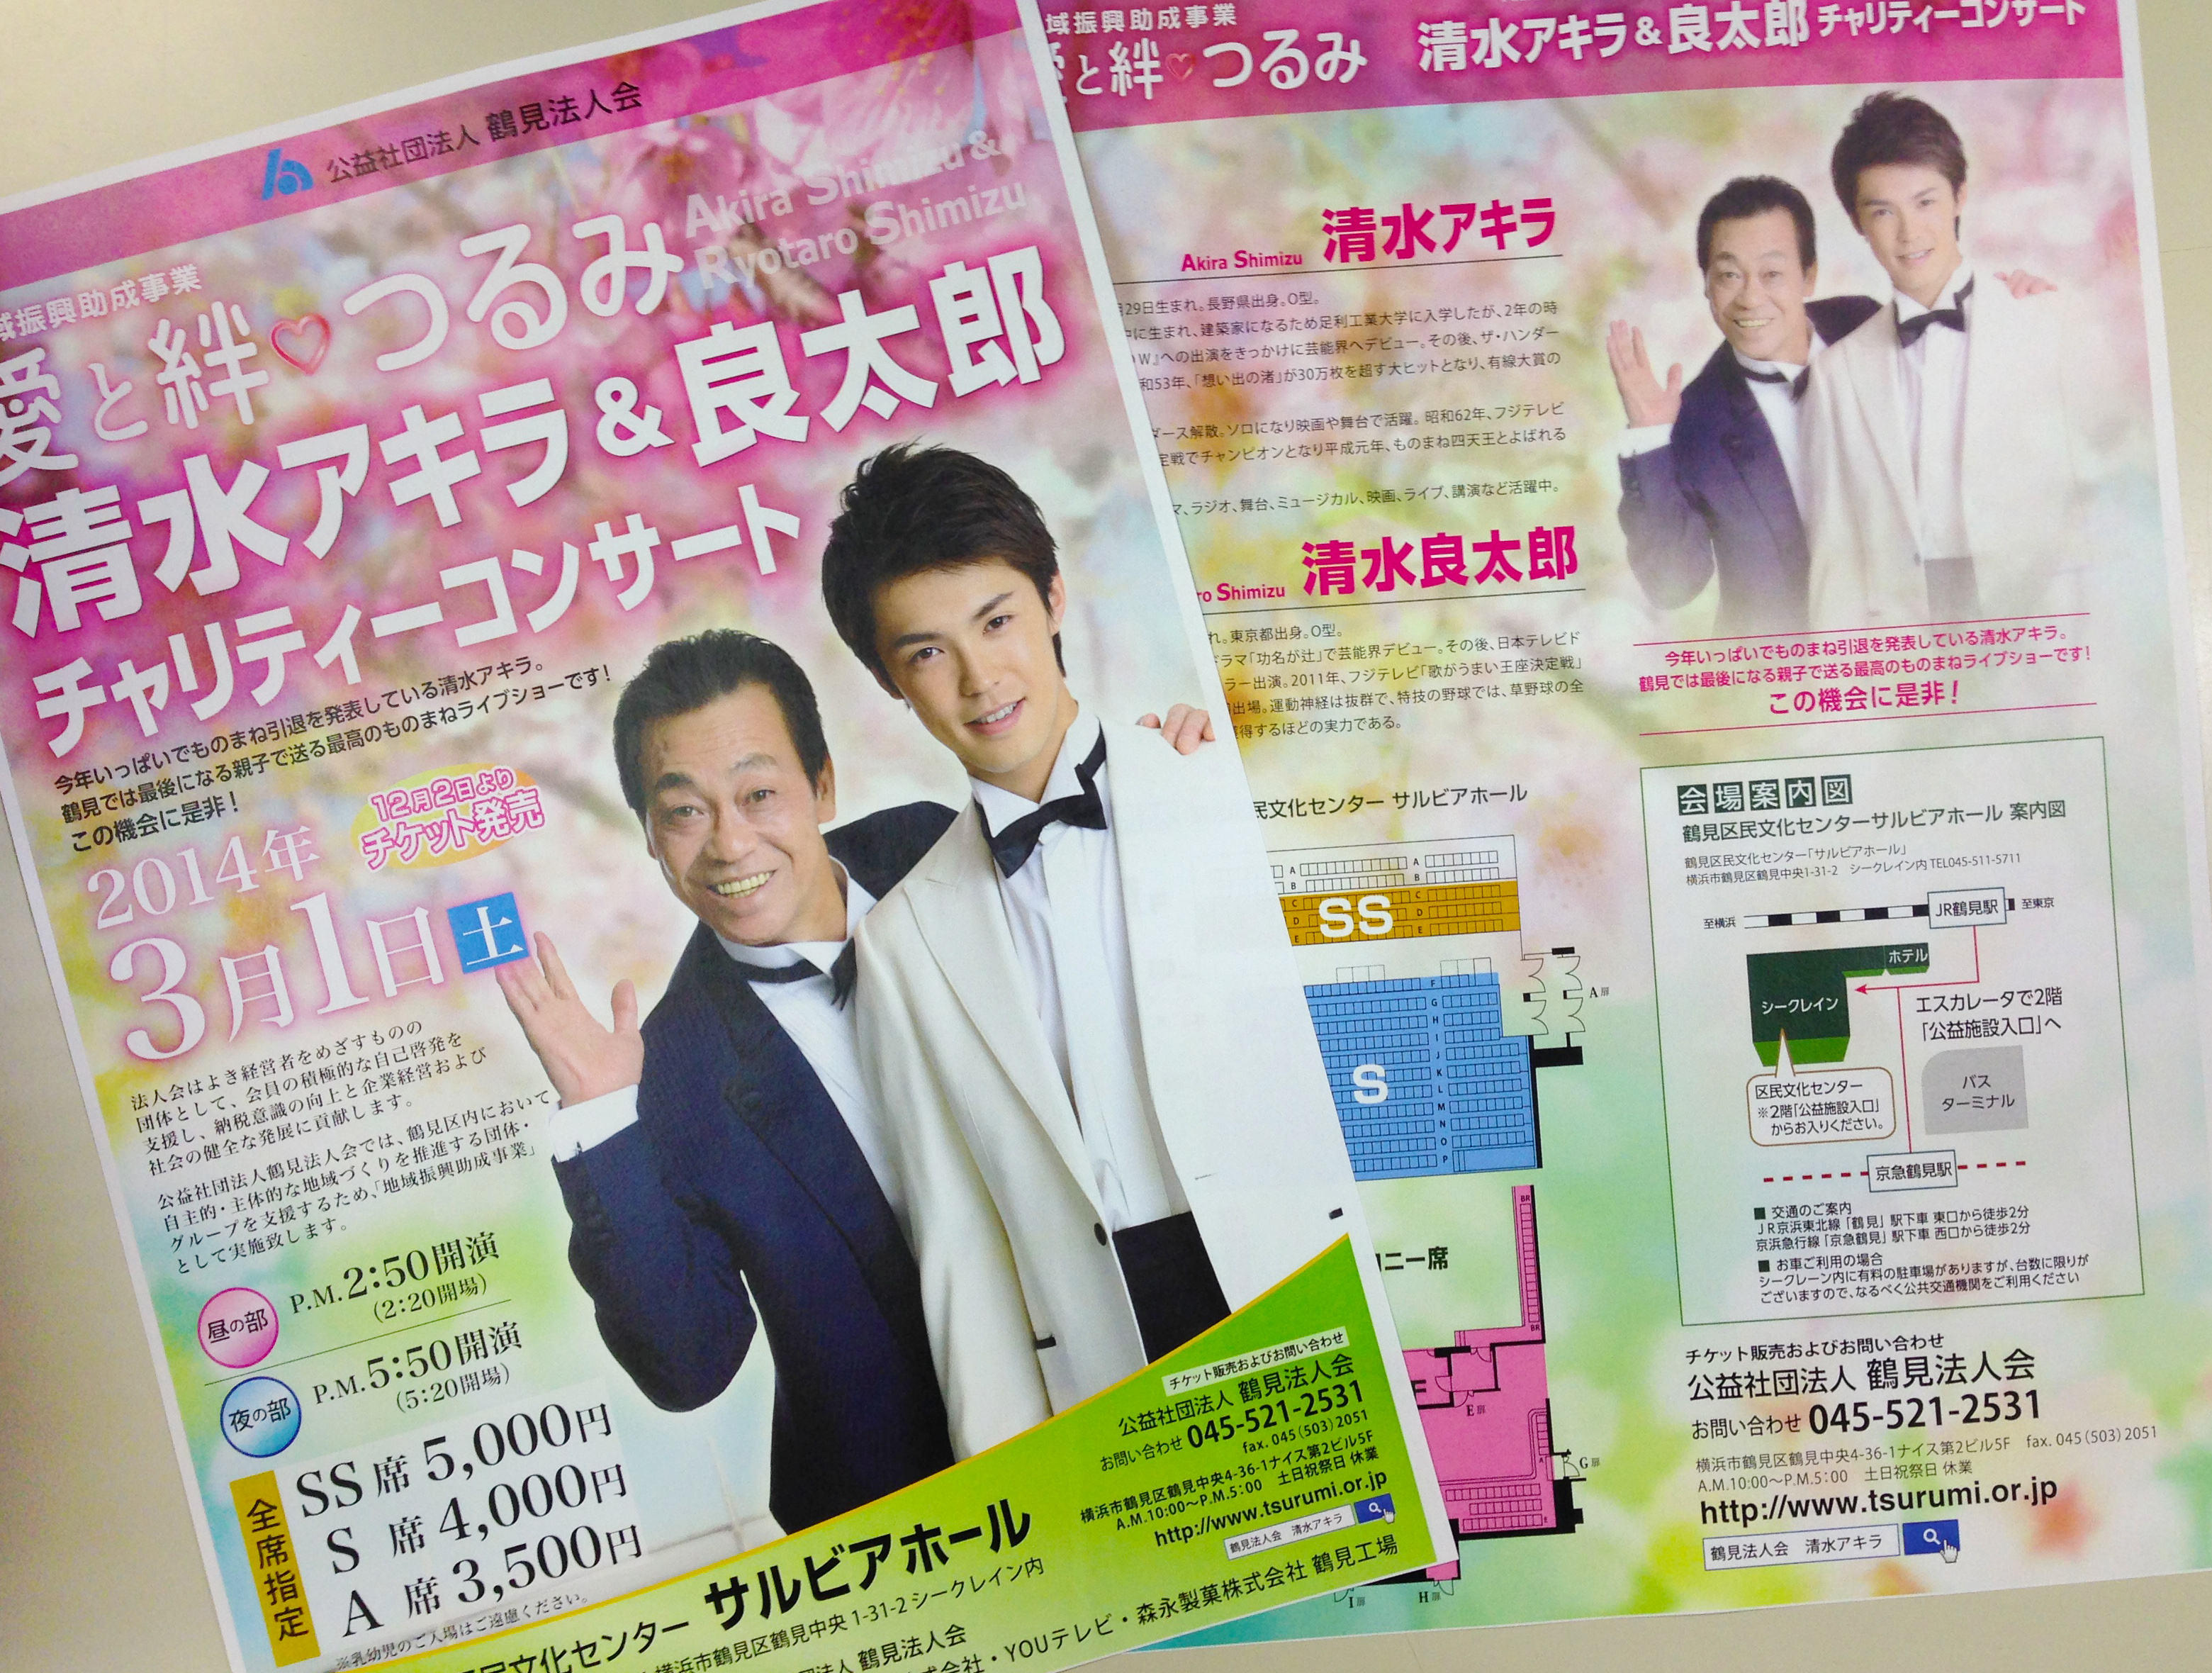 【チラシ】清水アキラ&清水良太郎コンサートチラシの決定デザイン